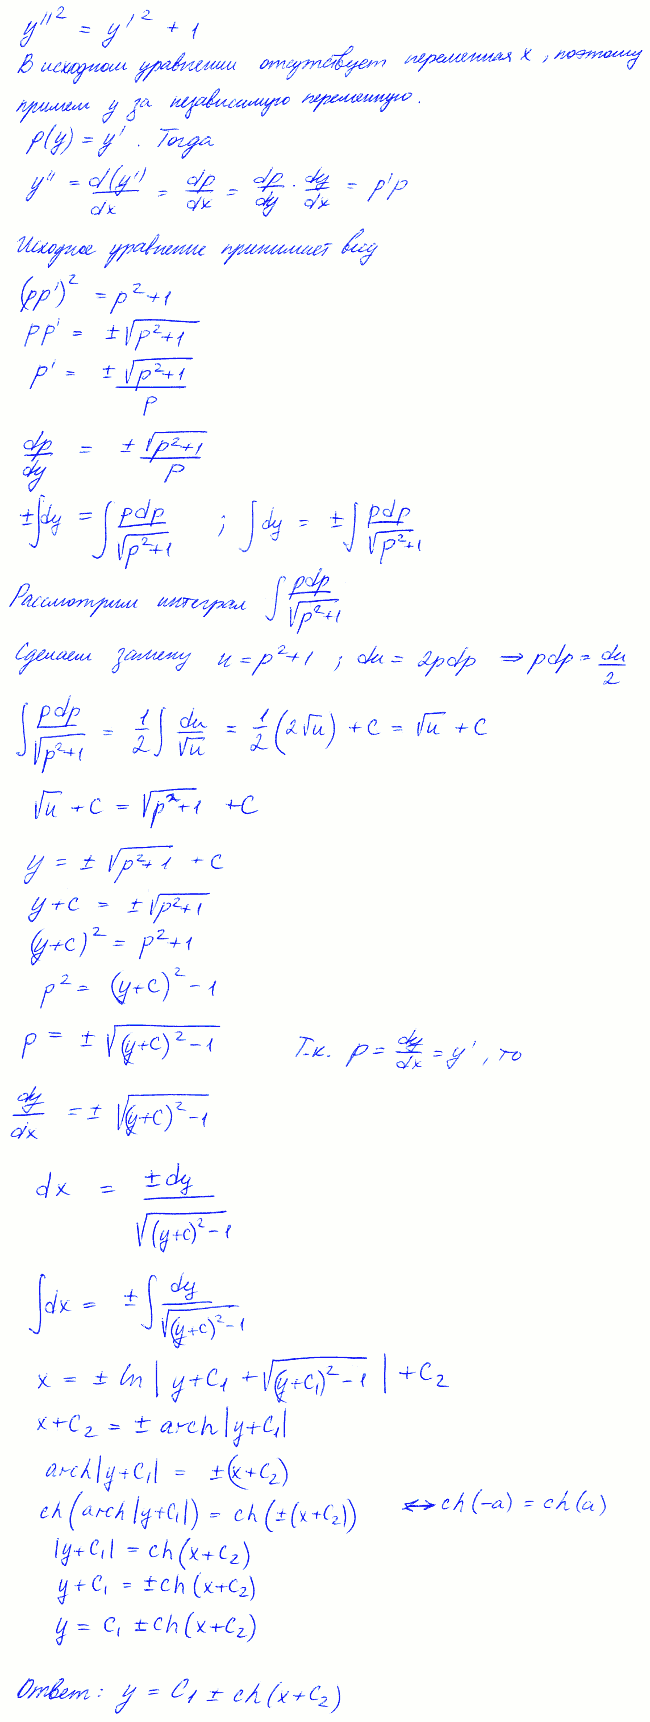 Уравнения, допускающие понижение порядка - решение задачи 436